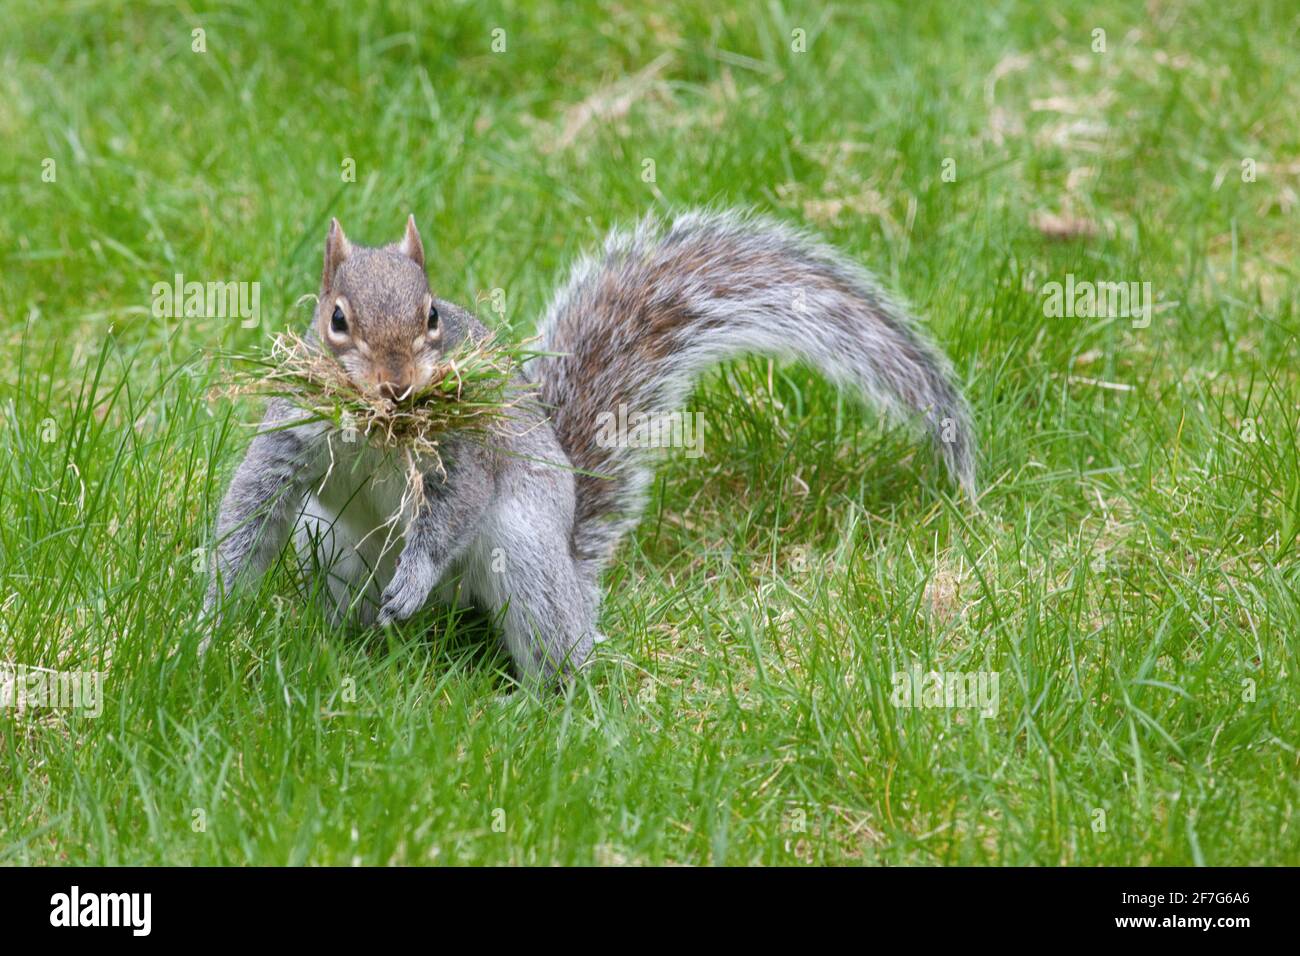 Météo au Royaume-Uni, le 7 avril 2021 : alors que le Royaume-Uni subit une autre pression froide, un écureuil gris rassemble de la mousse et de l'herbe d'une pelouse à Clapham pour l'aligner. Anna Watson/Alay Live News Banque D'Images